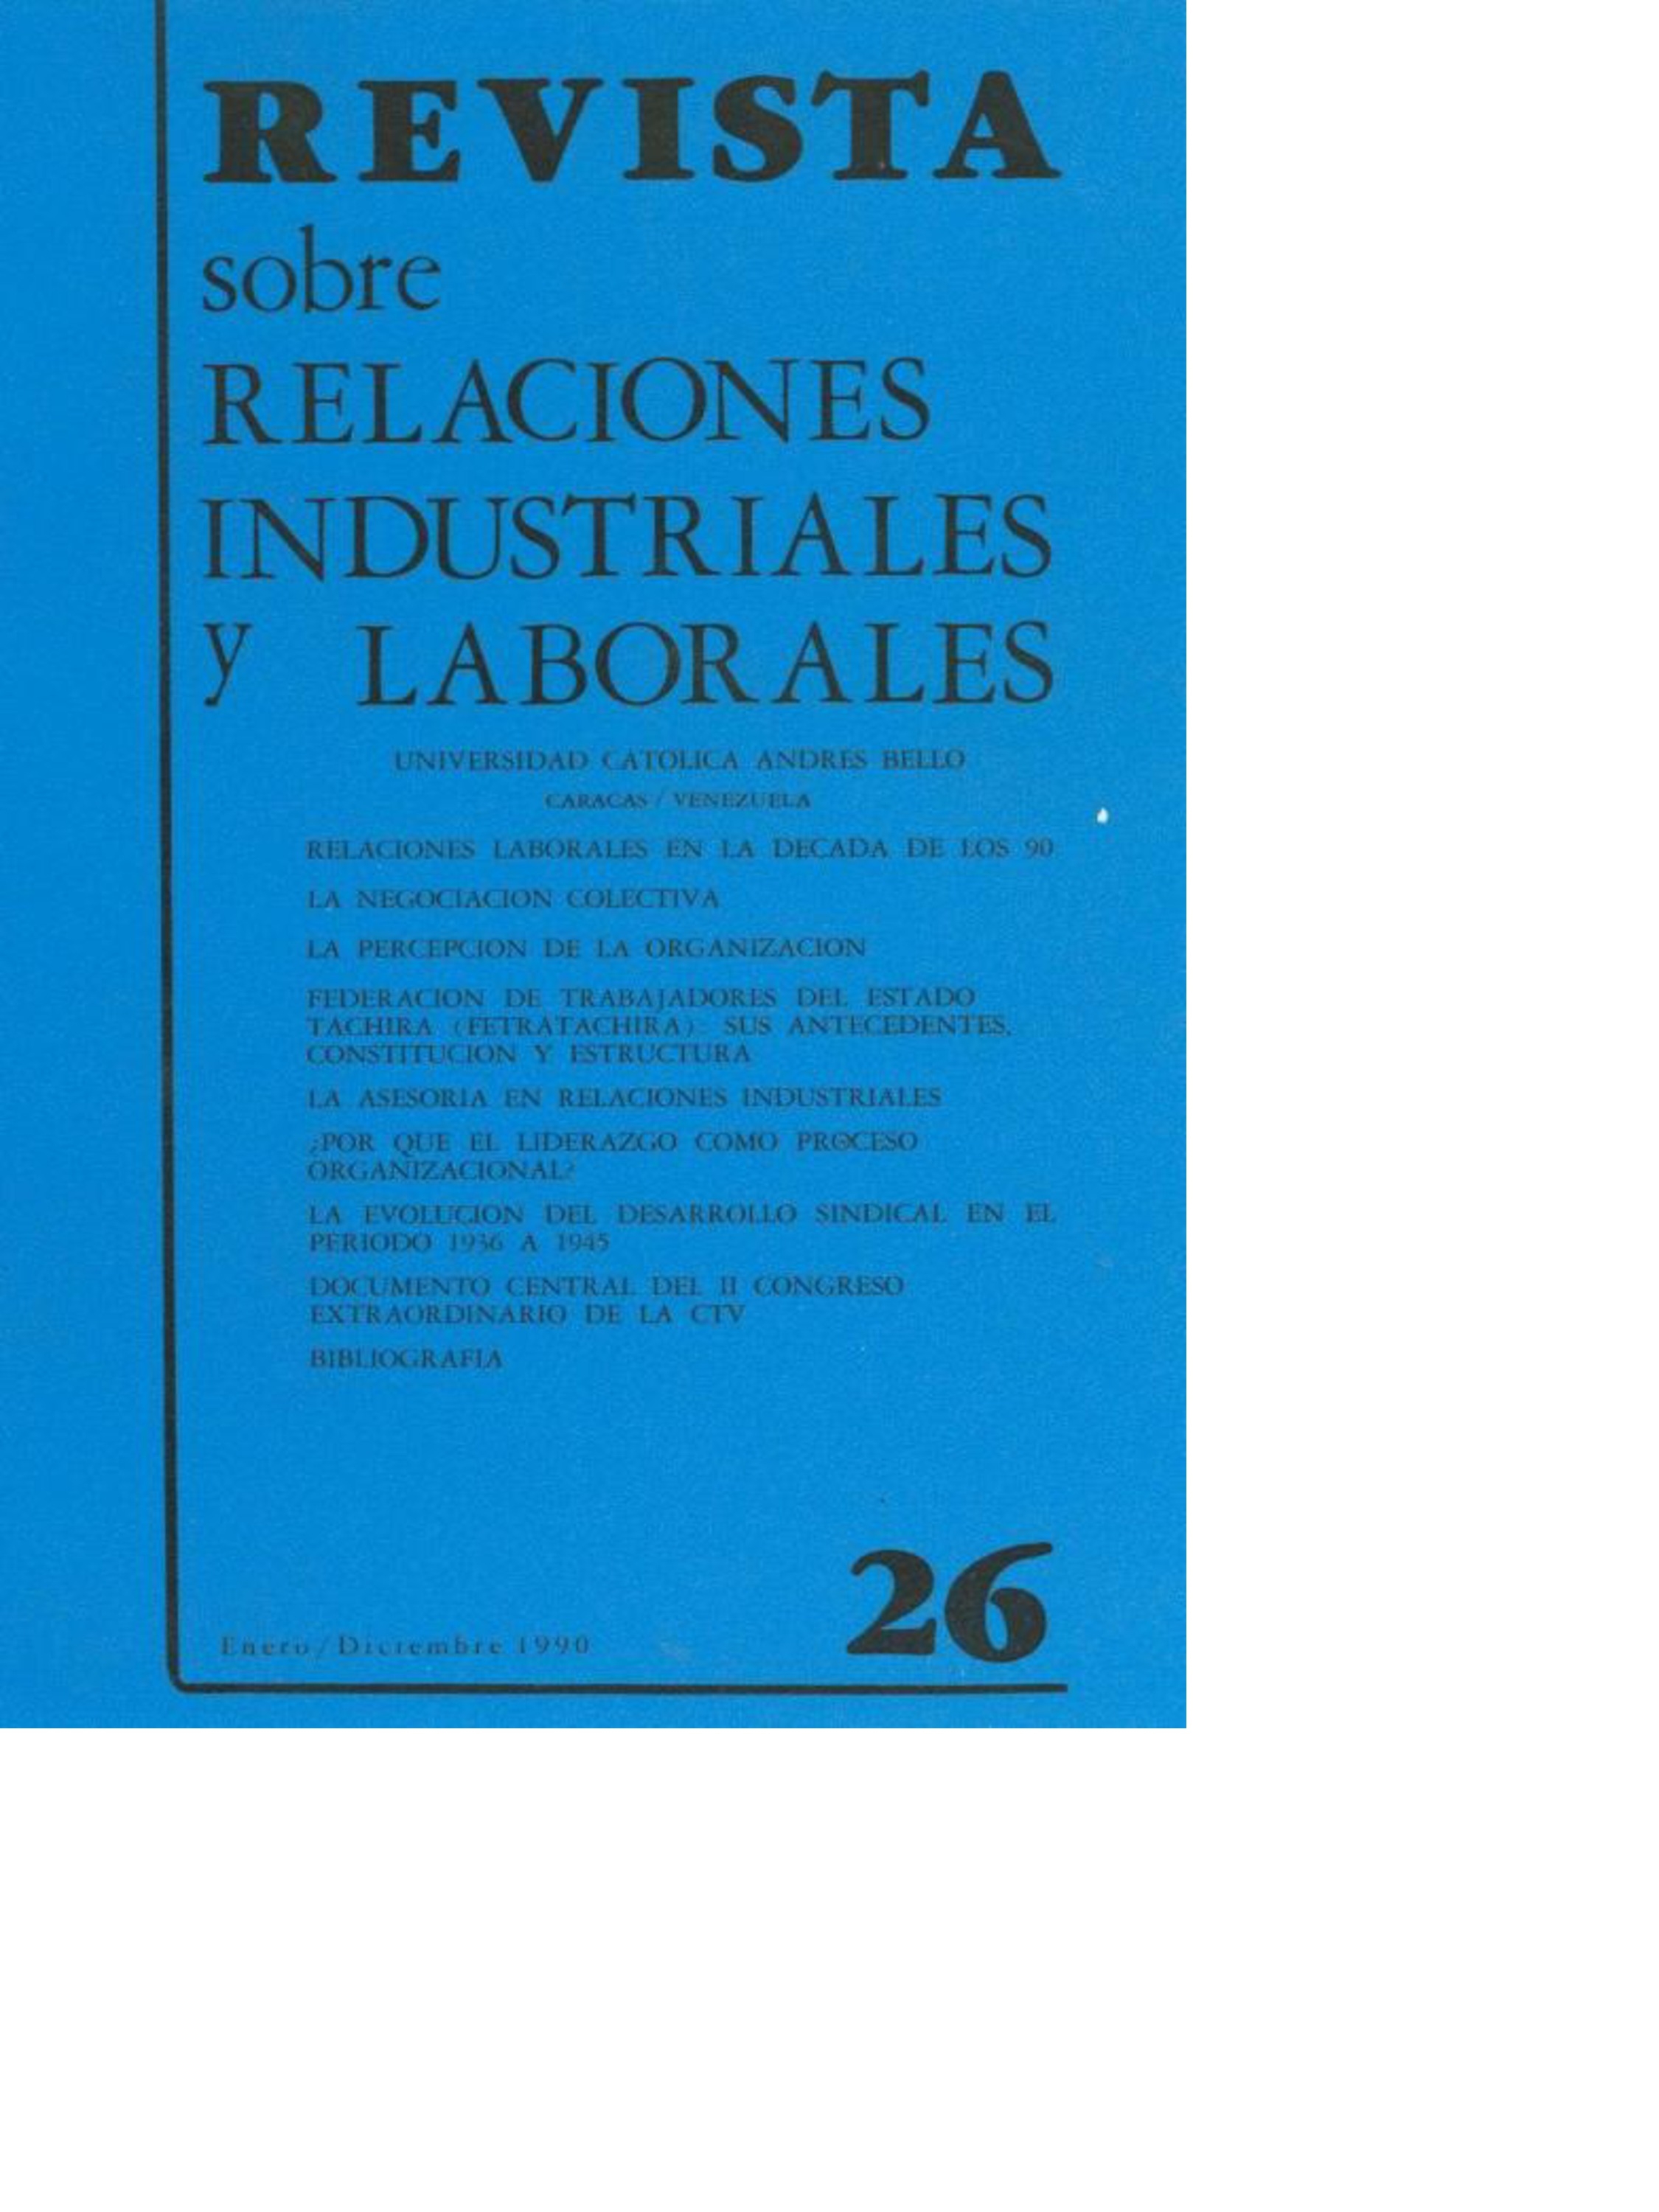 					Ver Núm. 26 (1990): Revista sobre Relaciones Industriales y Laborales
				